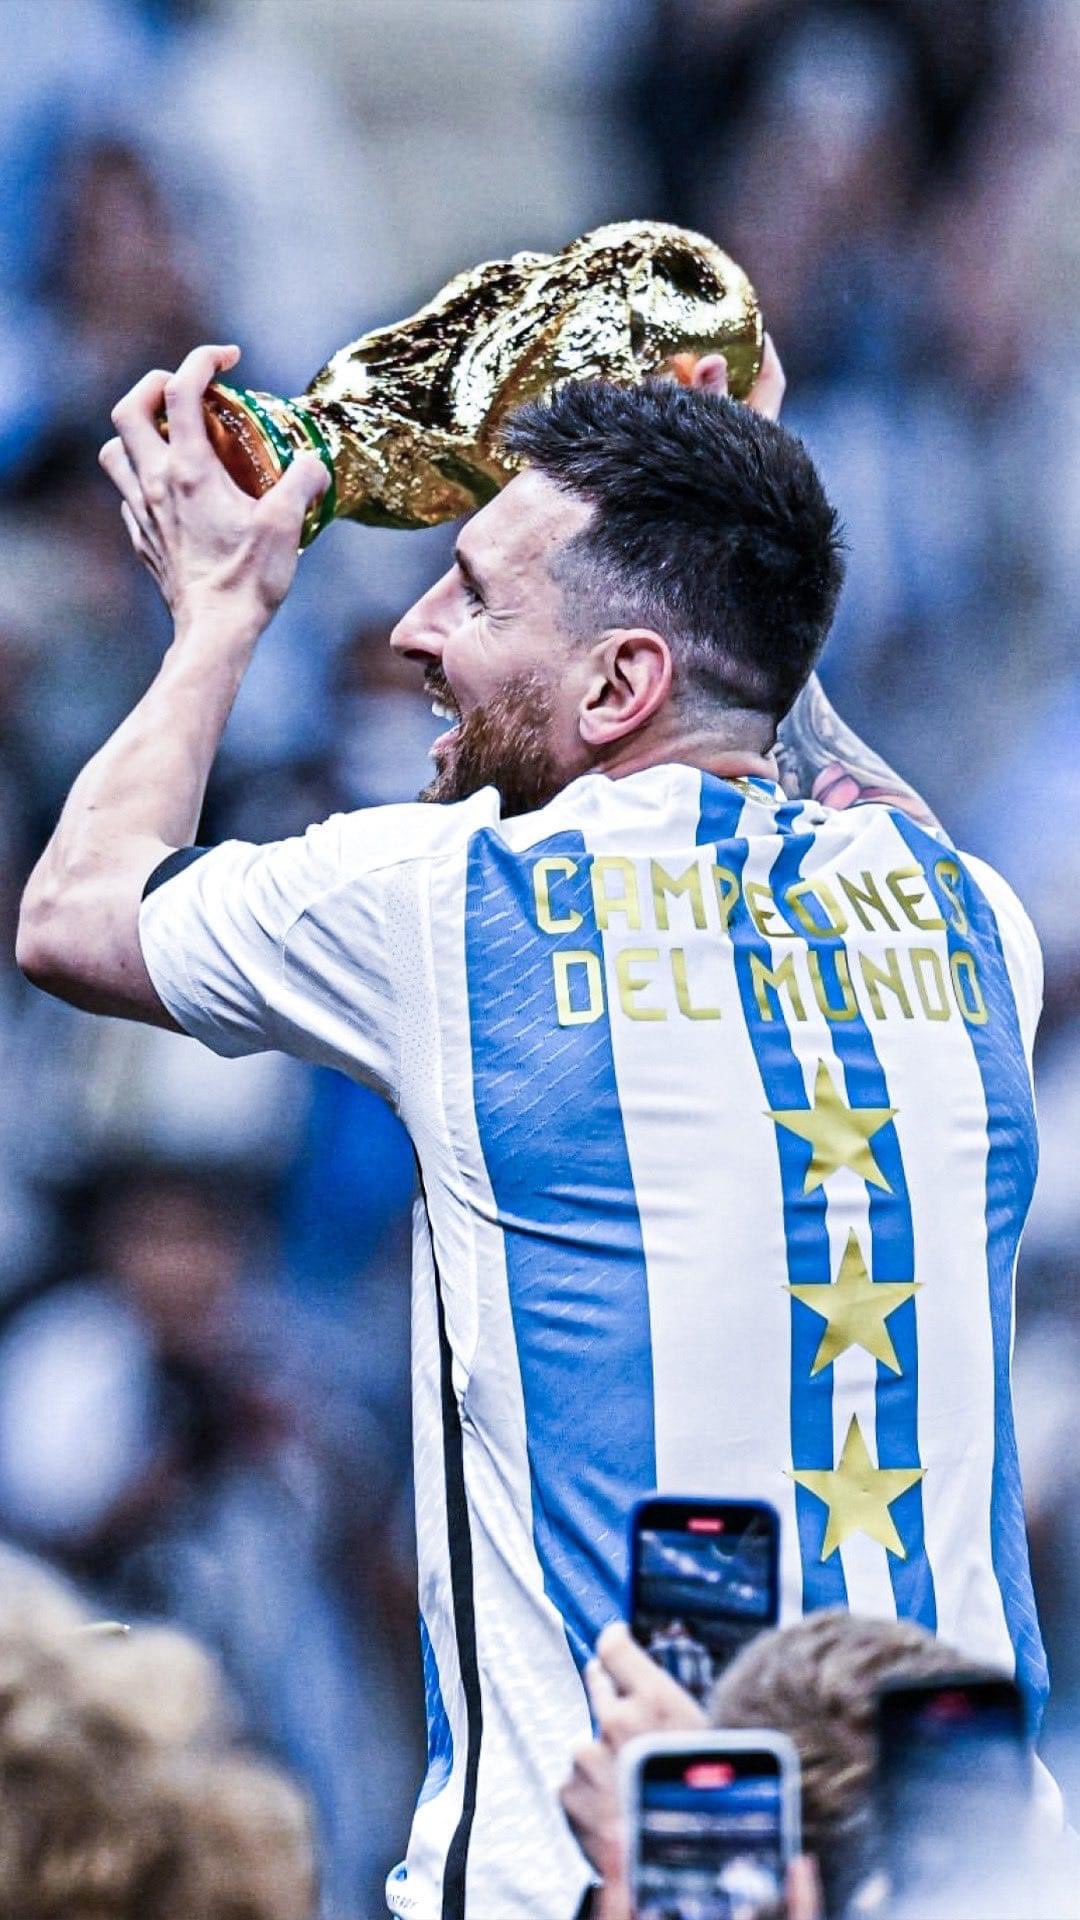 Anh chàng Messi vừa đăng quang ngôi vô địch. Hãy xem hình ảnh liên quan để cảm nhận cực kỳ hào hứng và vui mừng với phong độ tuyệt vời của anh ấy!